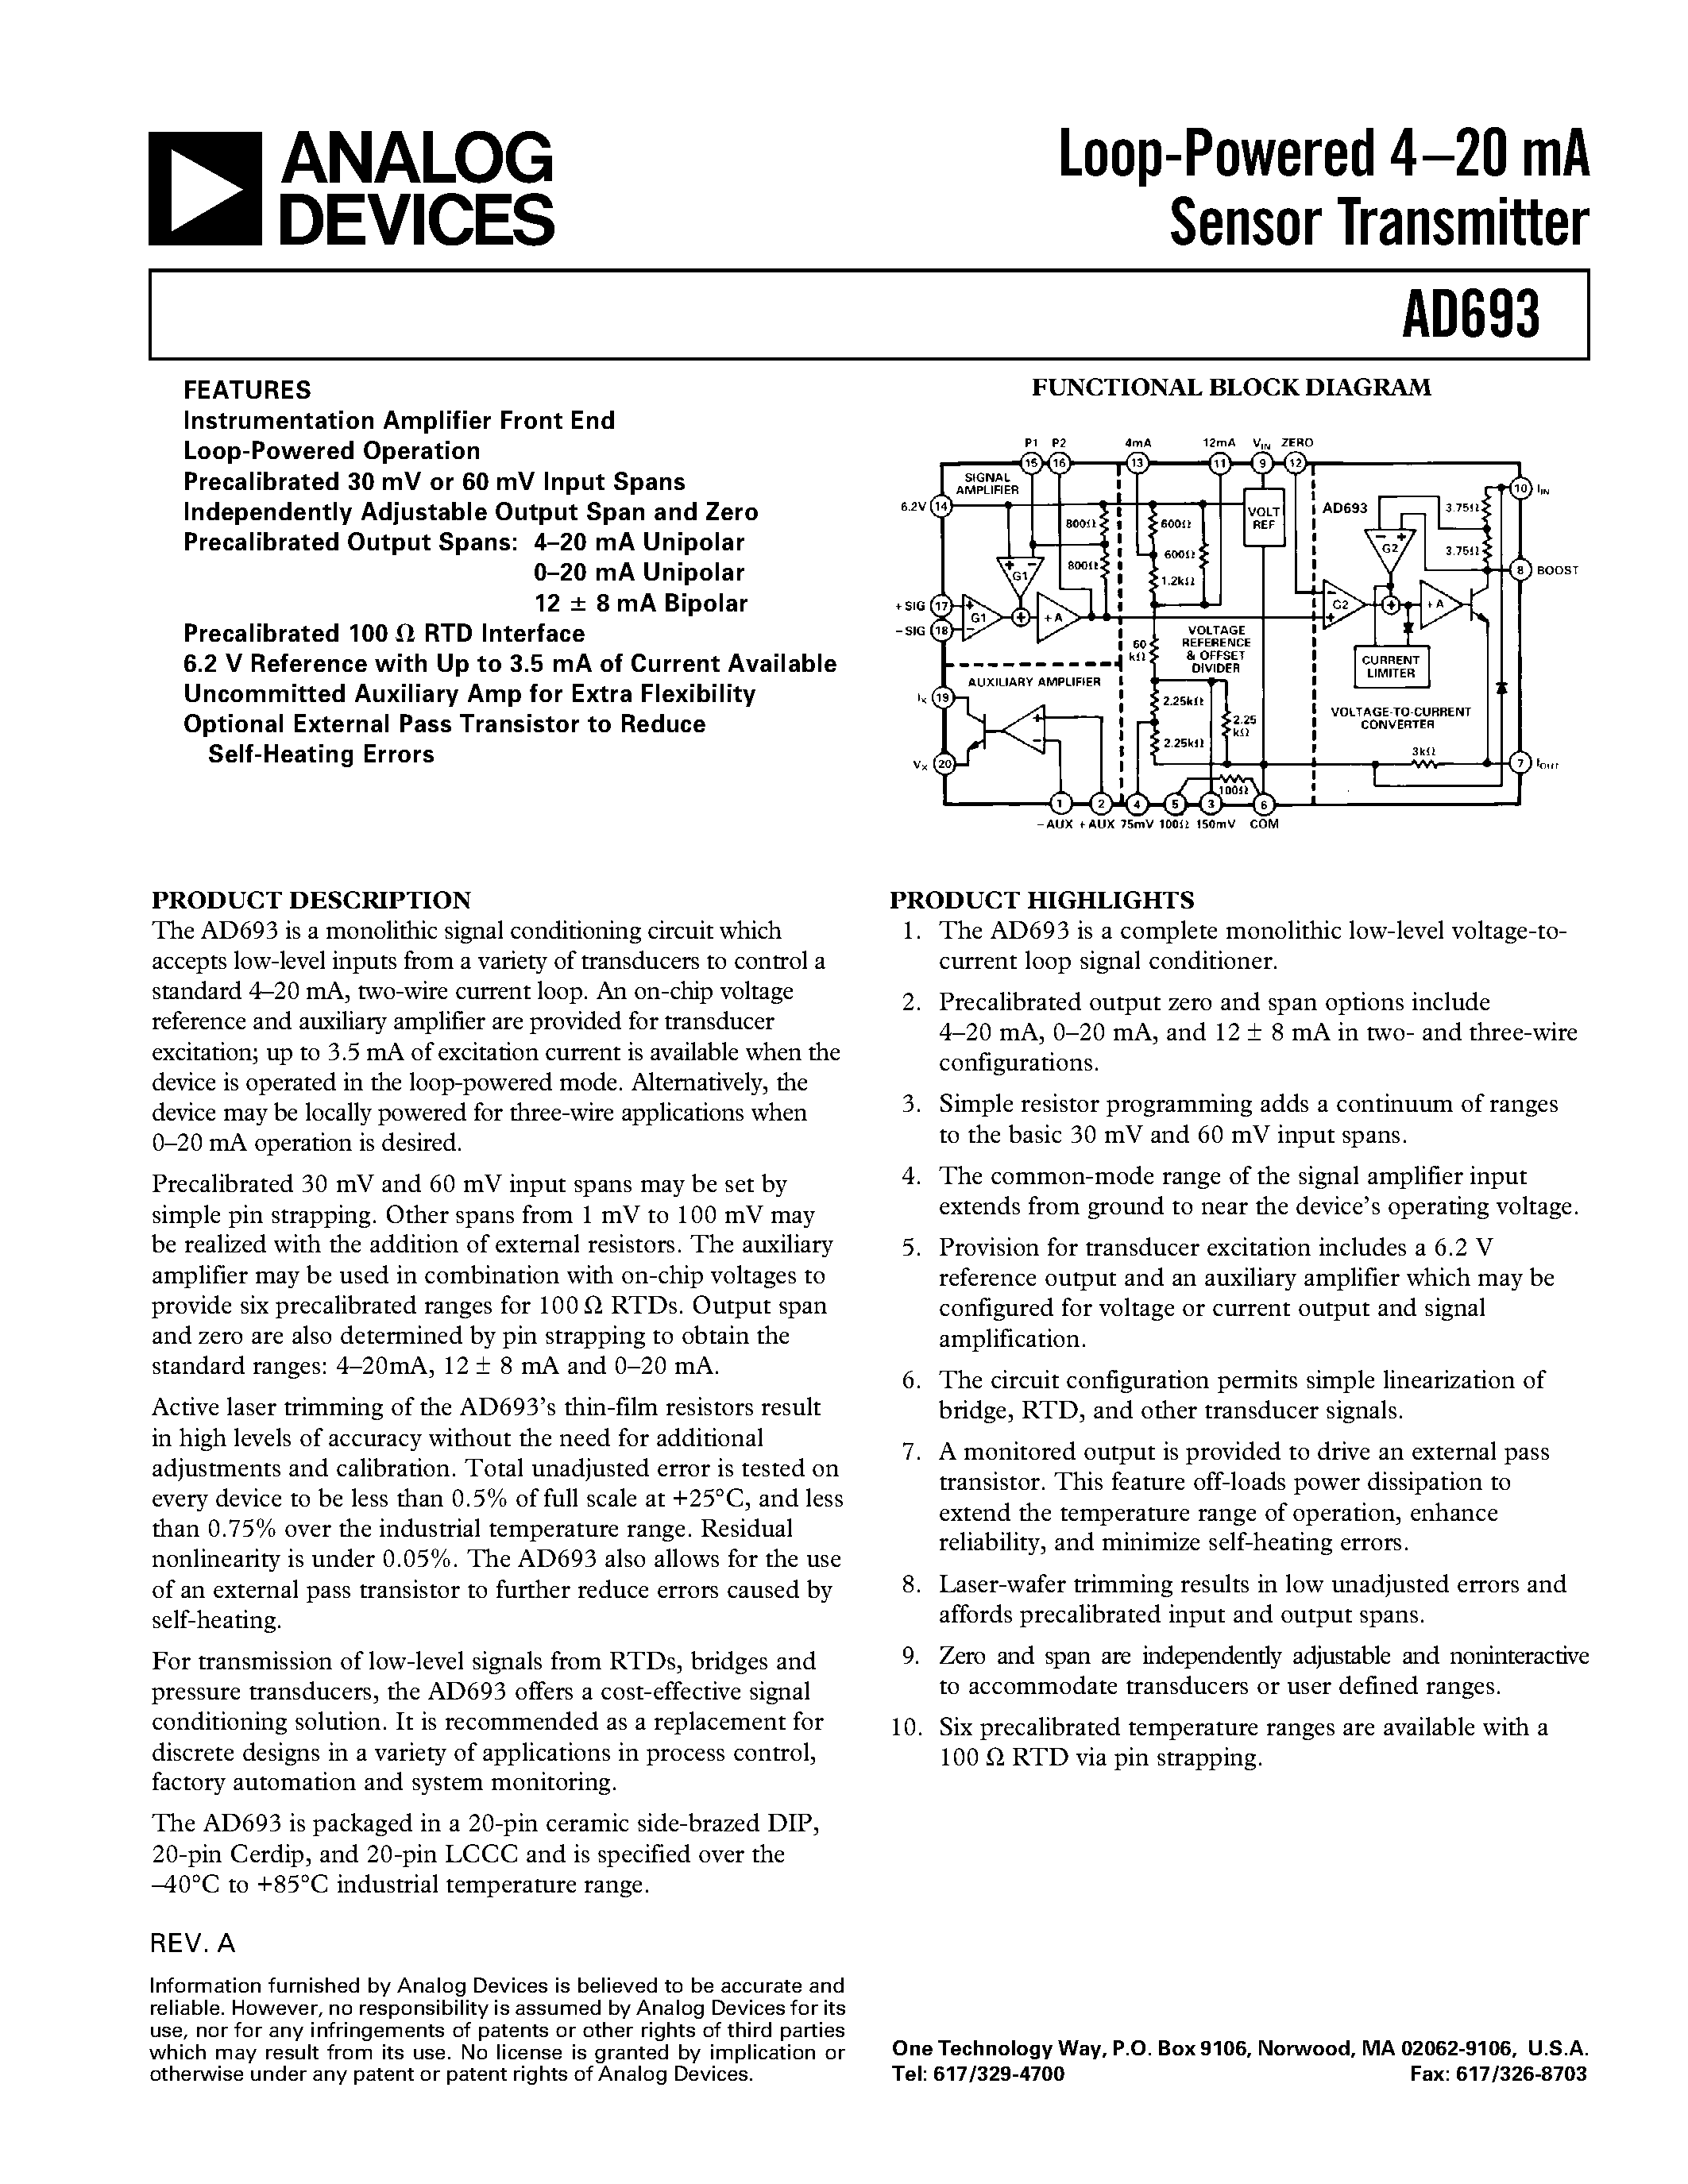 Даташит AD693AD - Loop-Powered 4.20 mA Sensor Transmitter страница 1